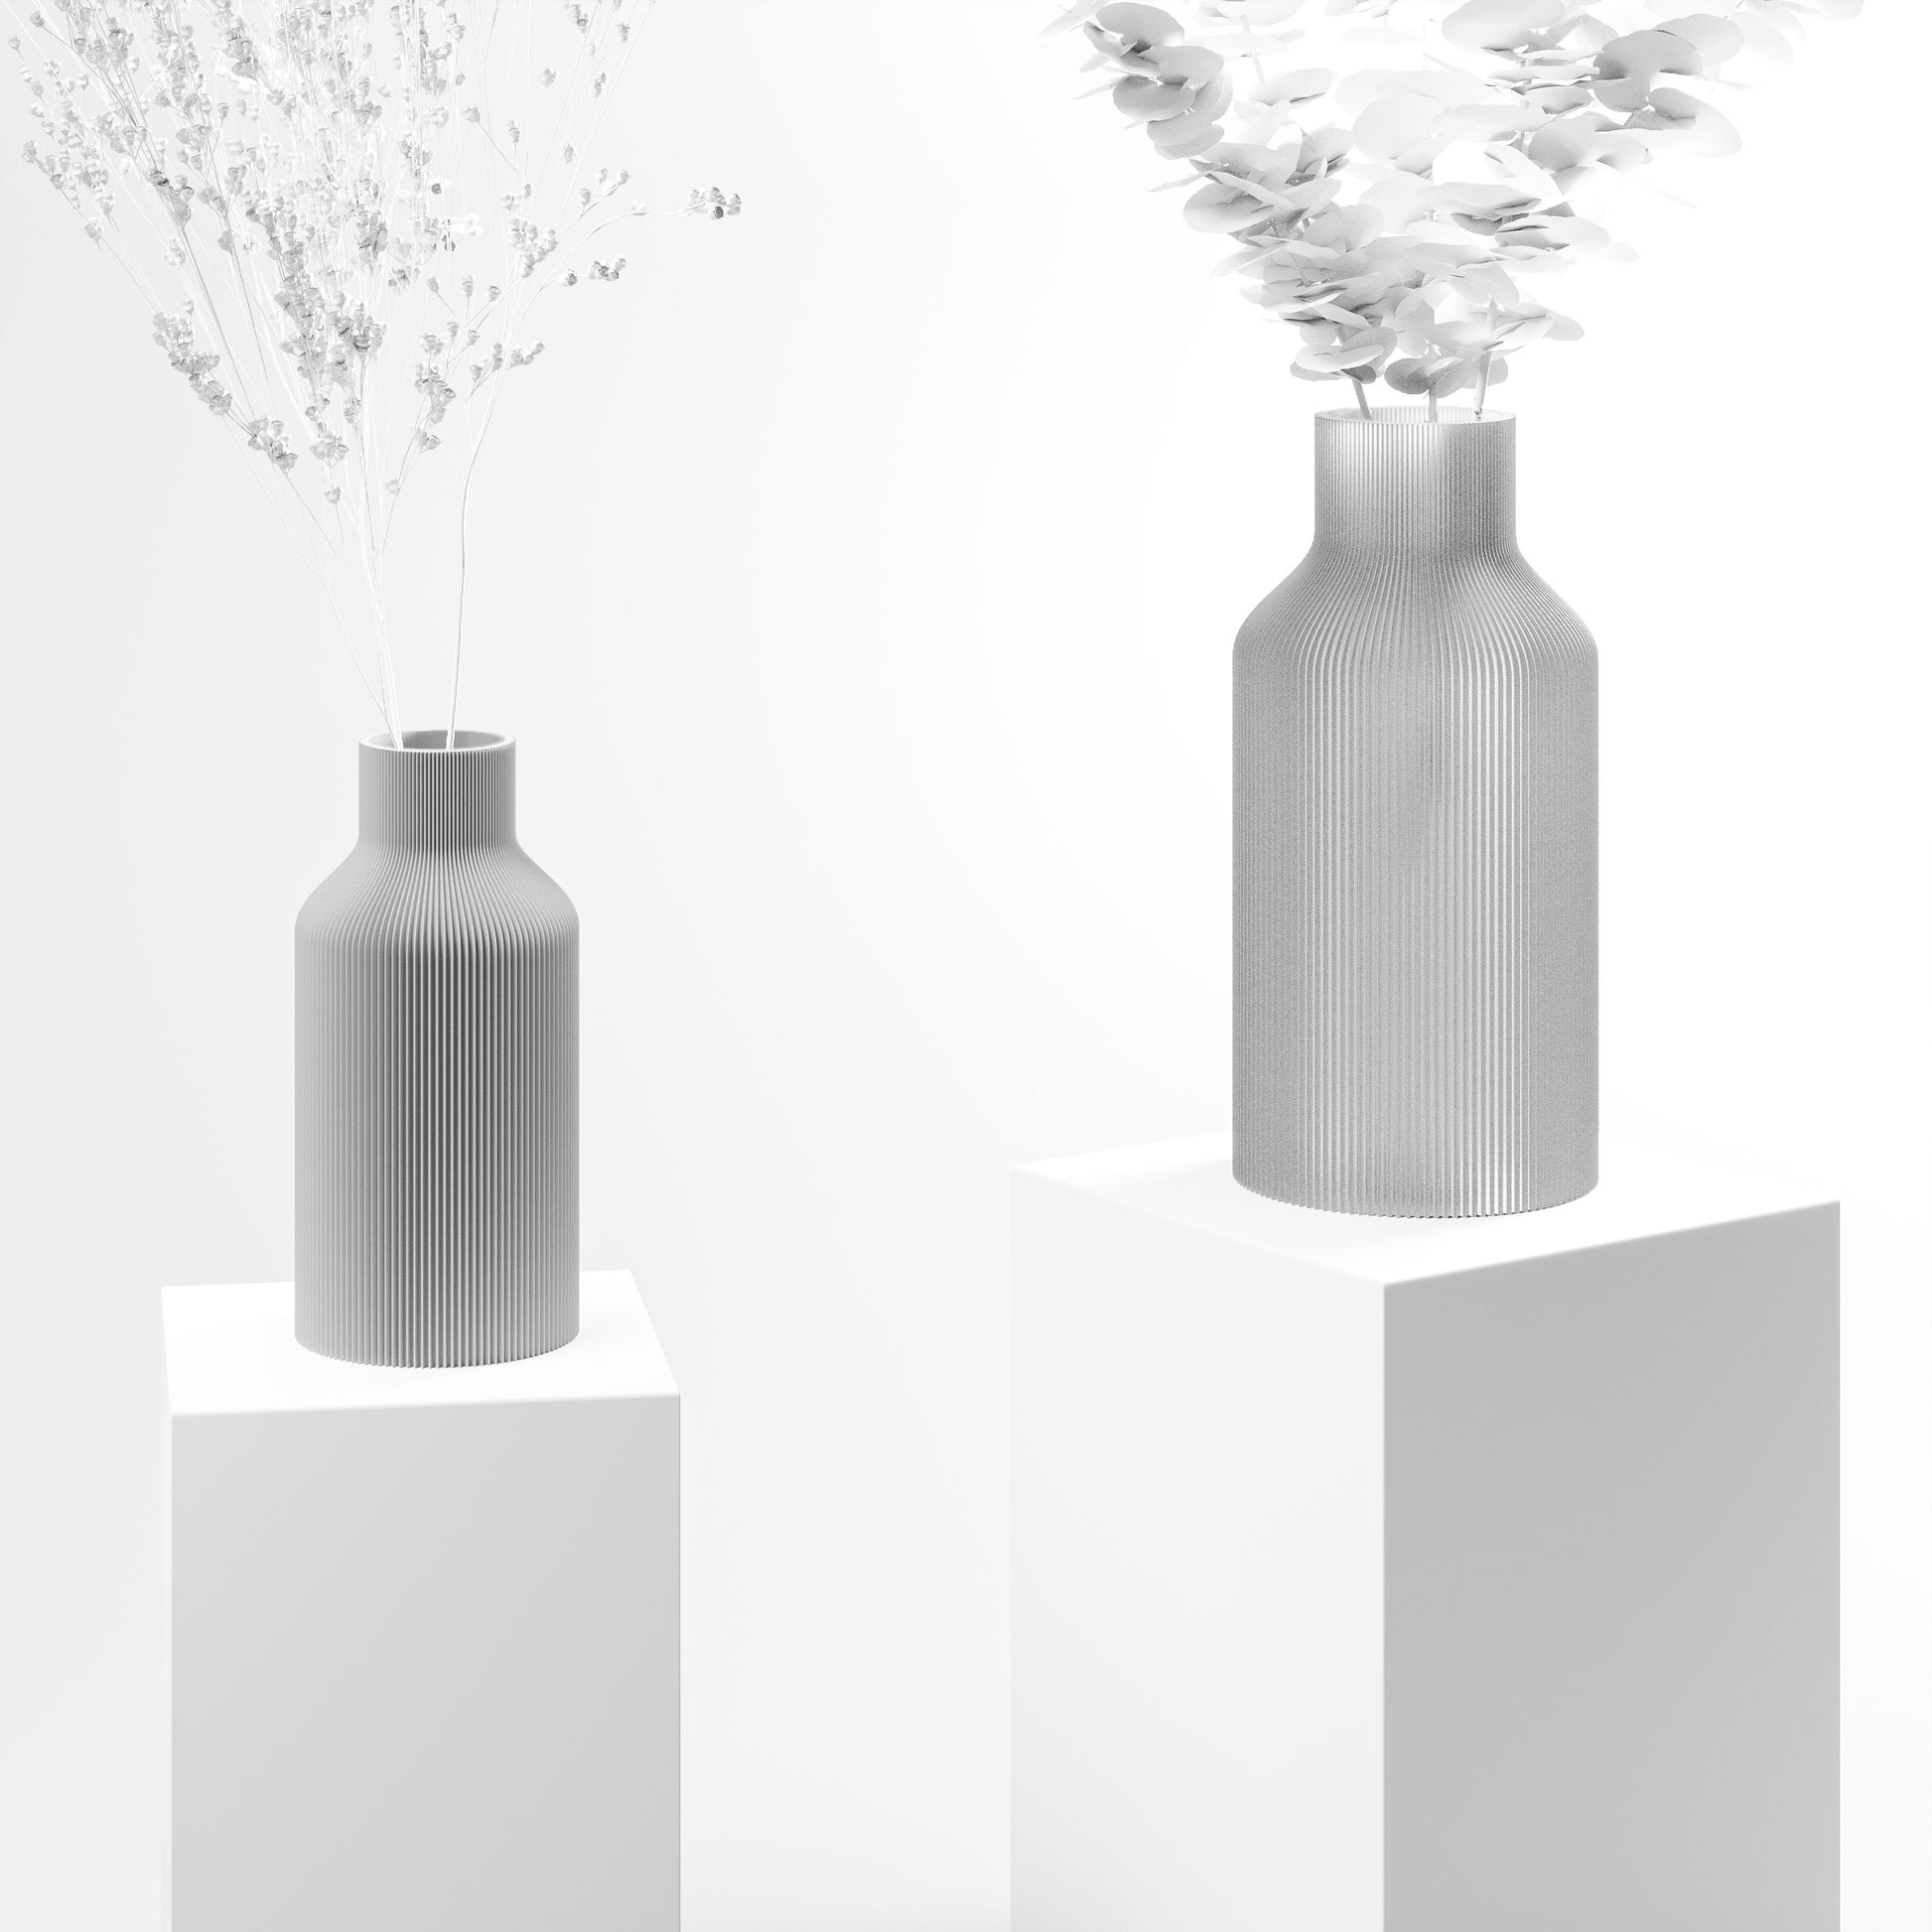 Stylische 3D Druck Vase mit feinen Rillen aus Stuttgart | 100% recyclebar | Form: Flasche | Farbe: grau matt klein